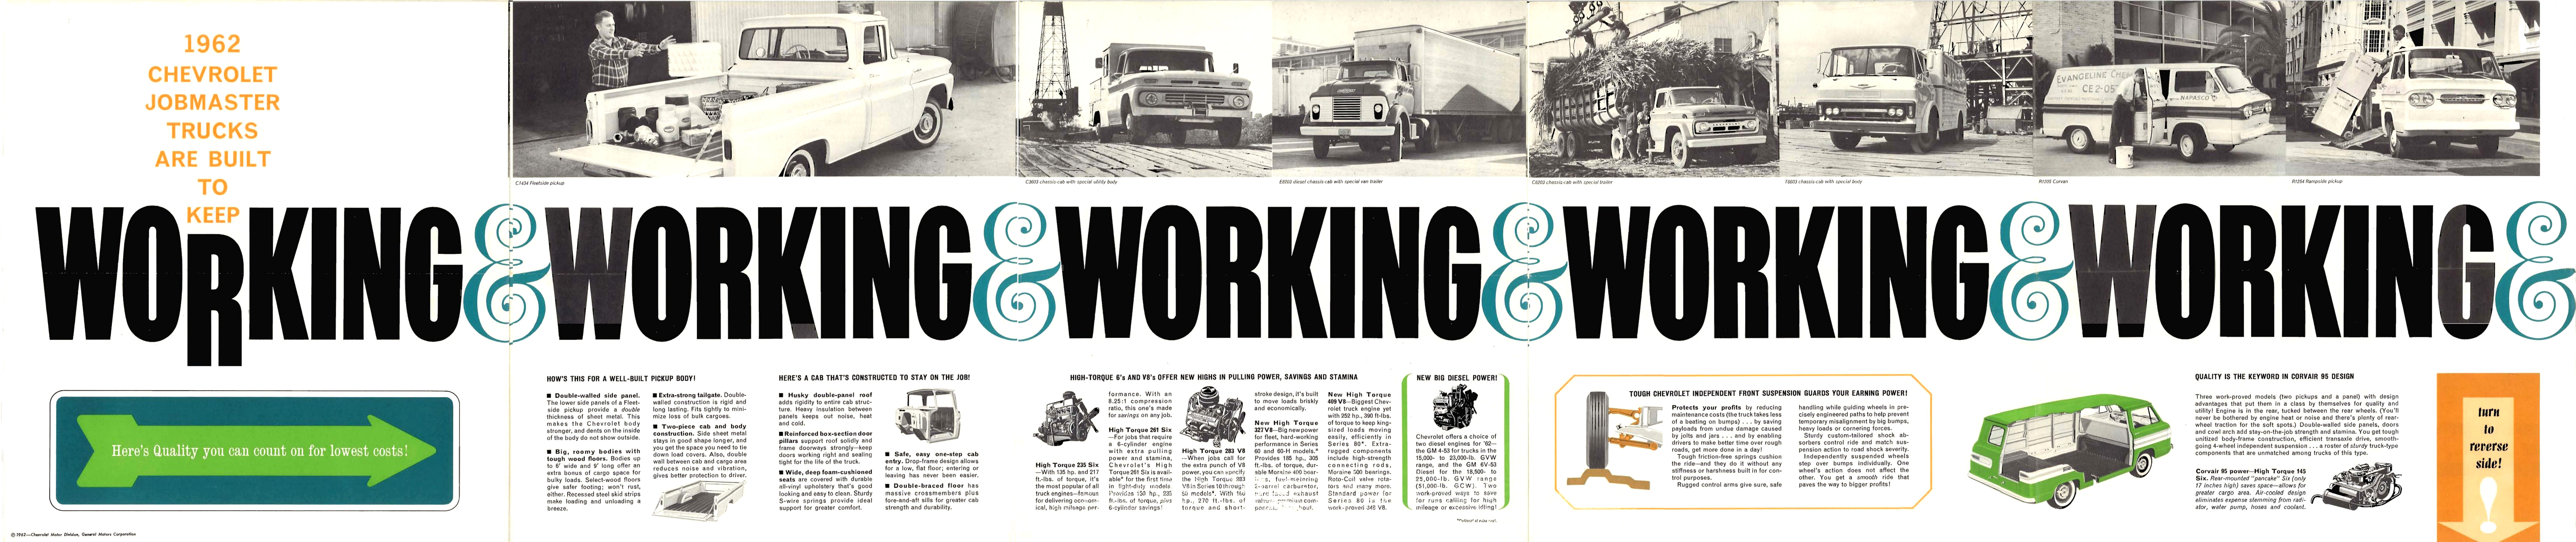 1962_Chevrolet_Jobmaster_Trucks_Foldout-Side_B